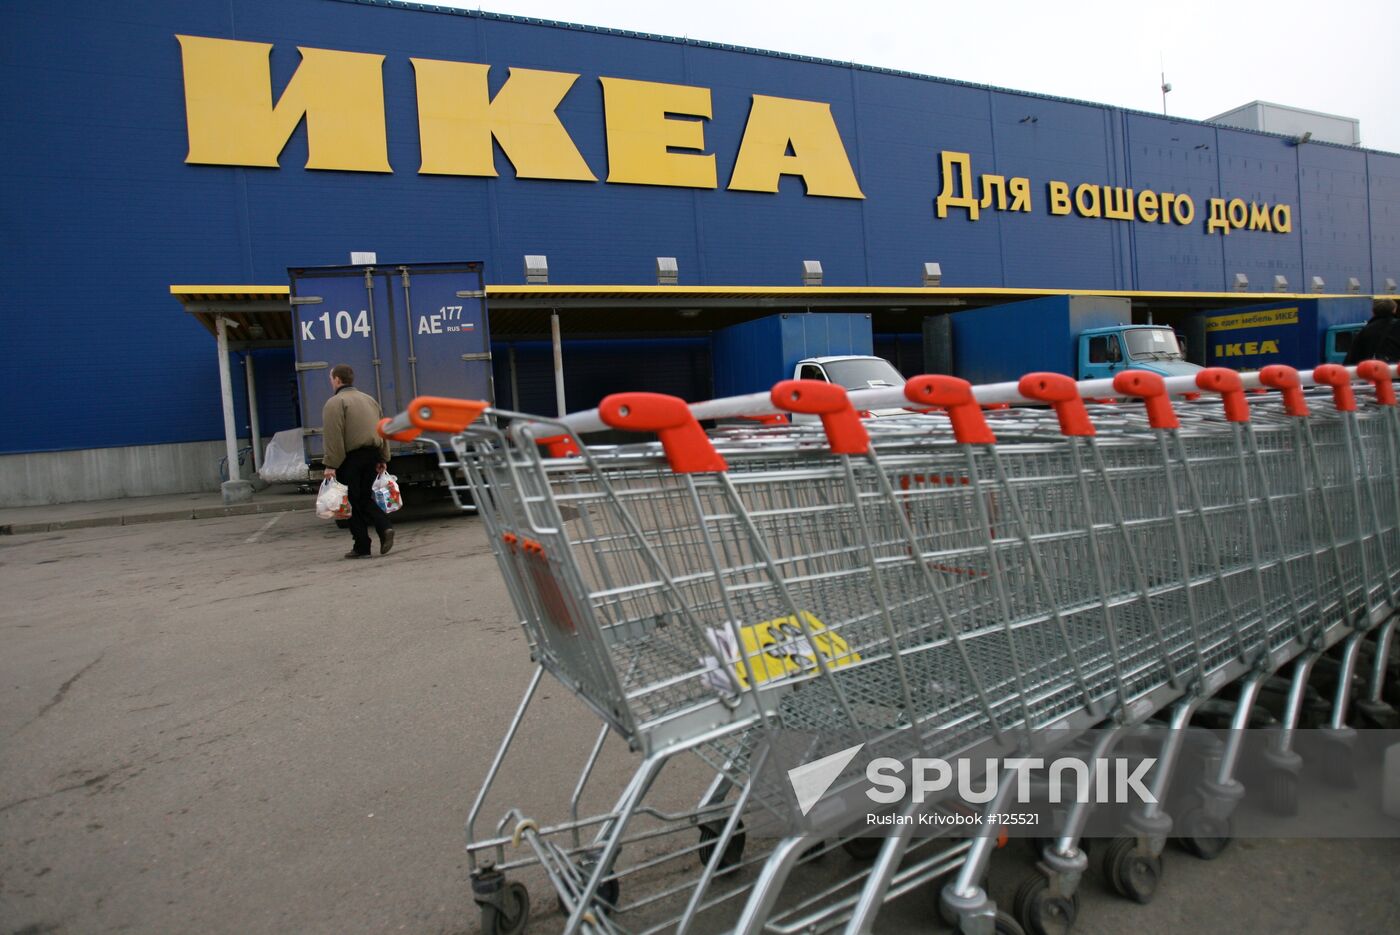 IKEA HYPERMARKET